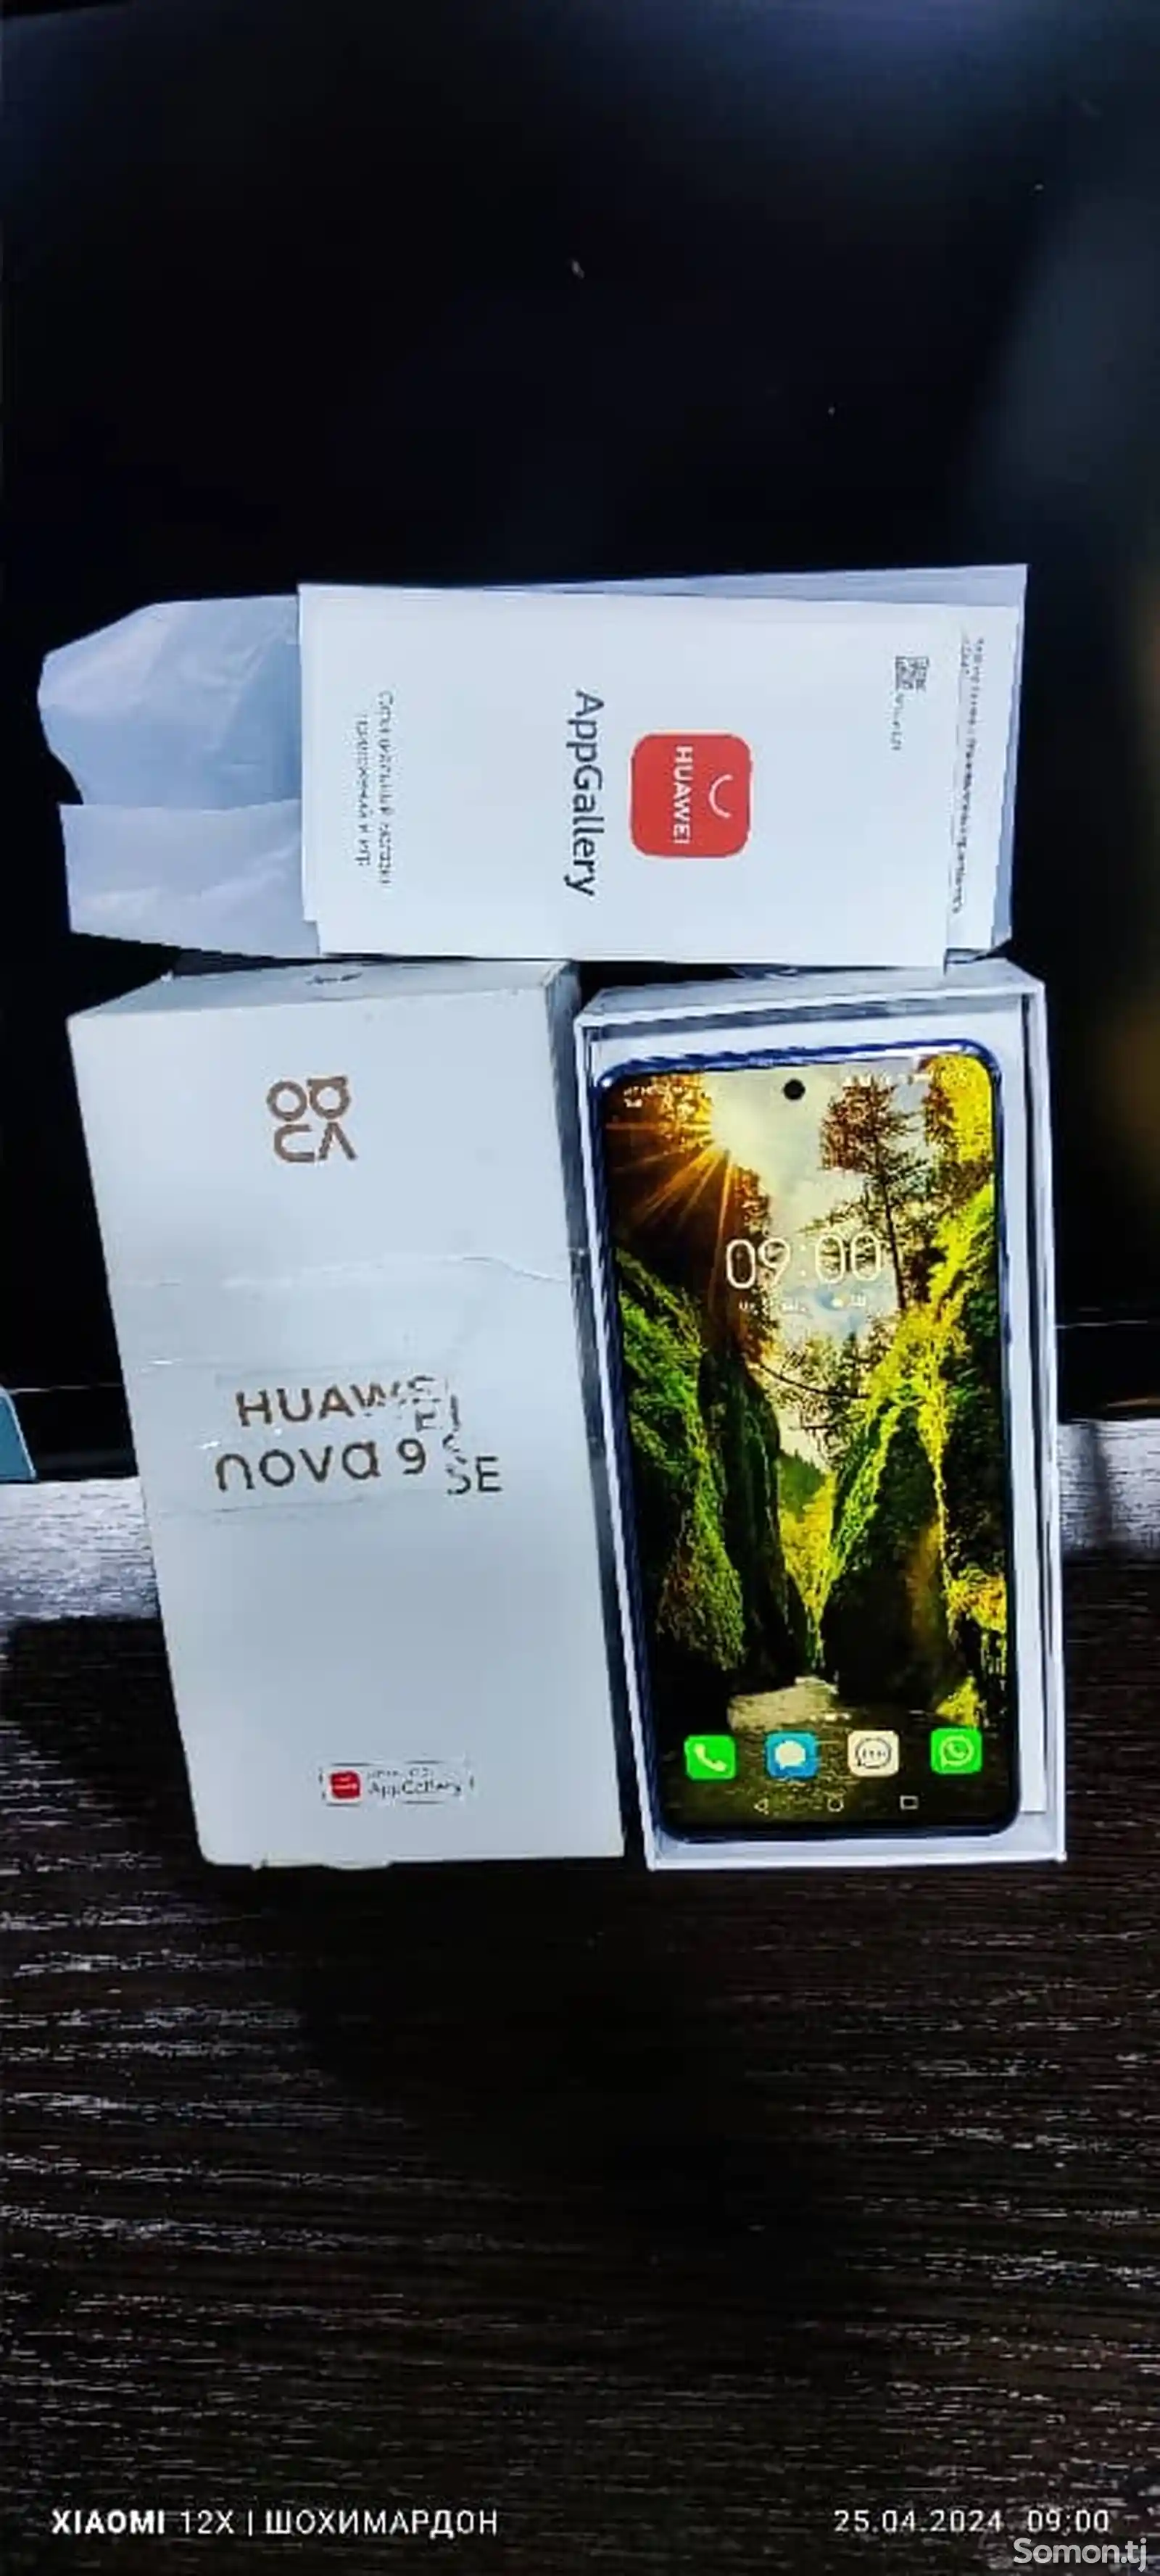 Huawei nova 9se-2